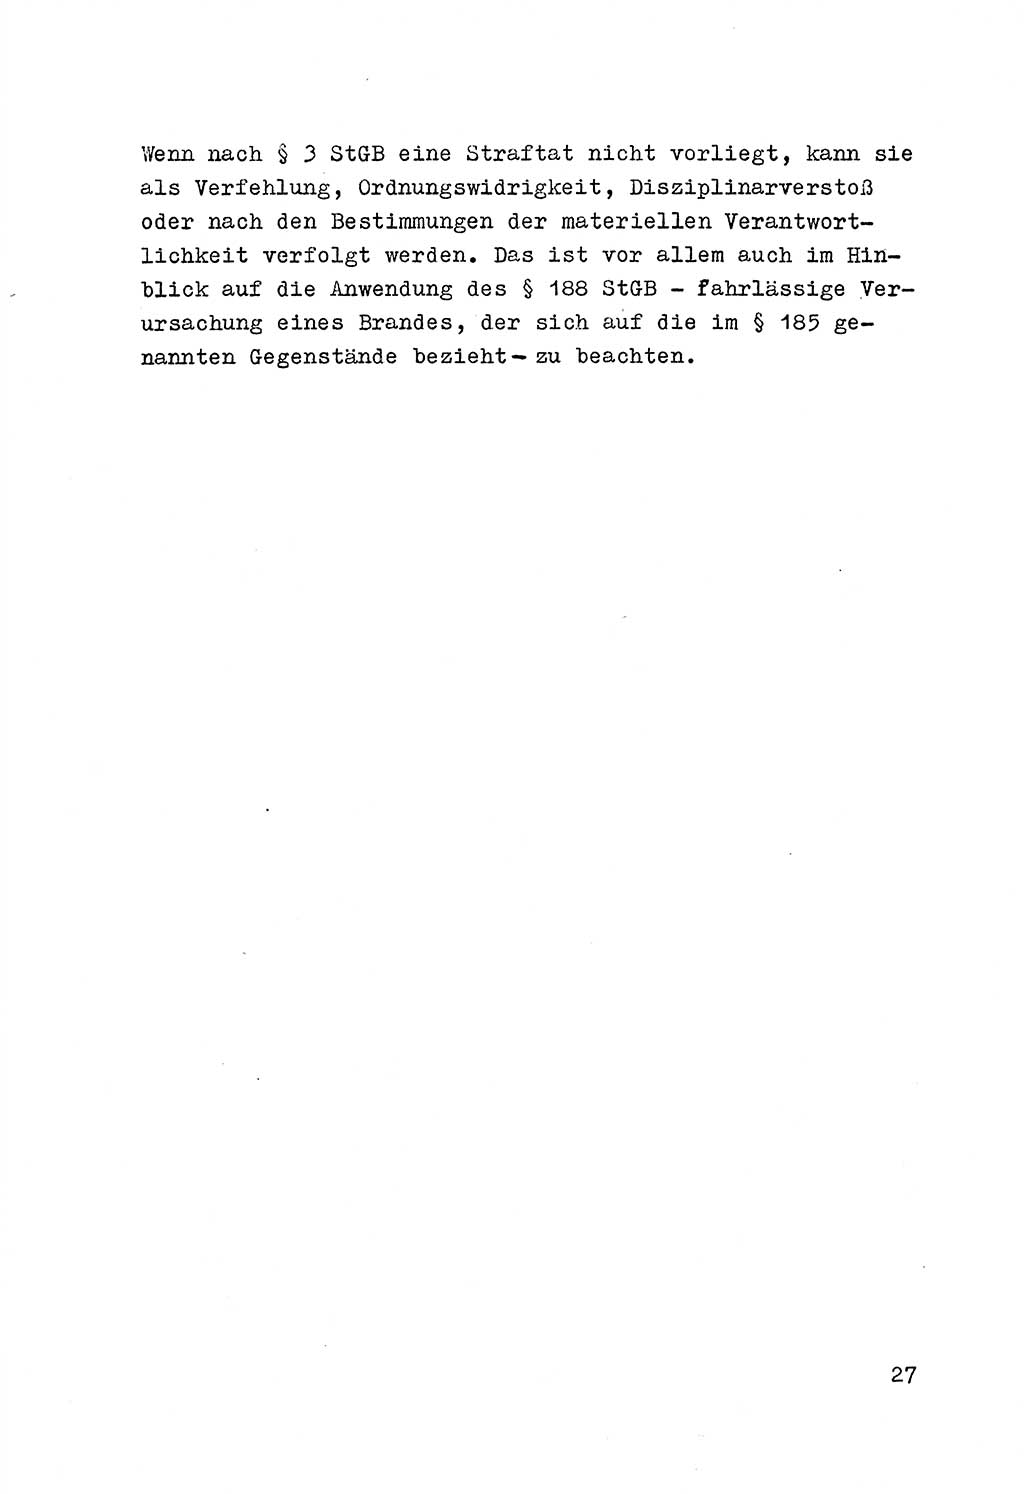 Strafrecht der DDR (Deutsche Demokratische Republik), Besonderer Teil, Lehrmaterial, Heft 7 1970, Seite 27 (Strafr. DDR BT Lehrmat. H. 7 1970, S. 27)